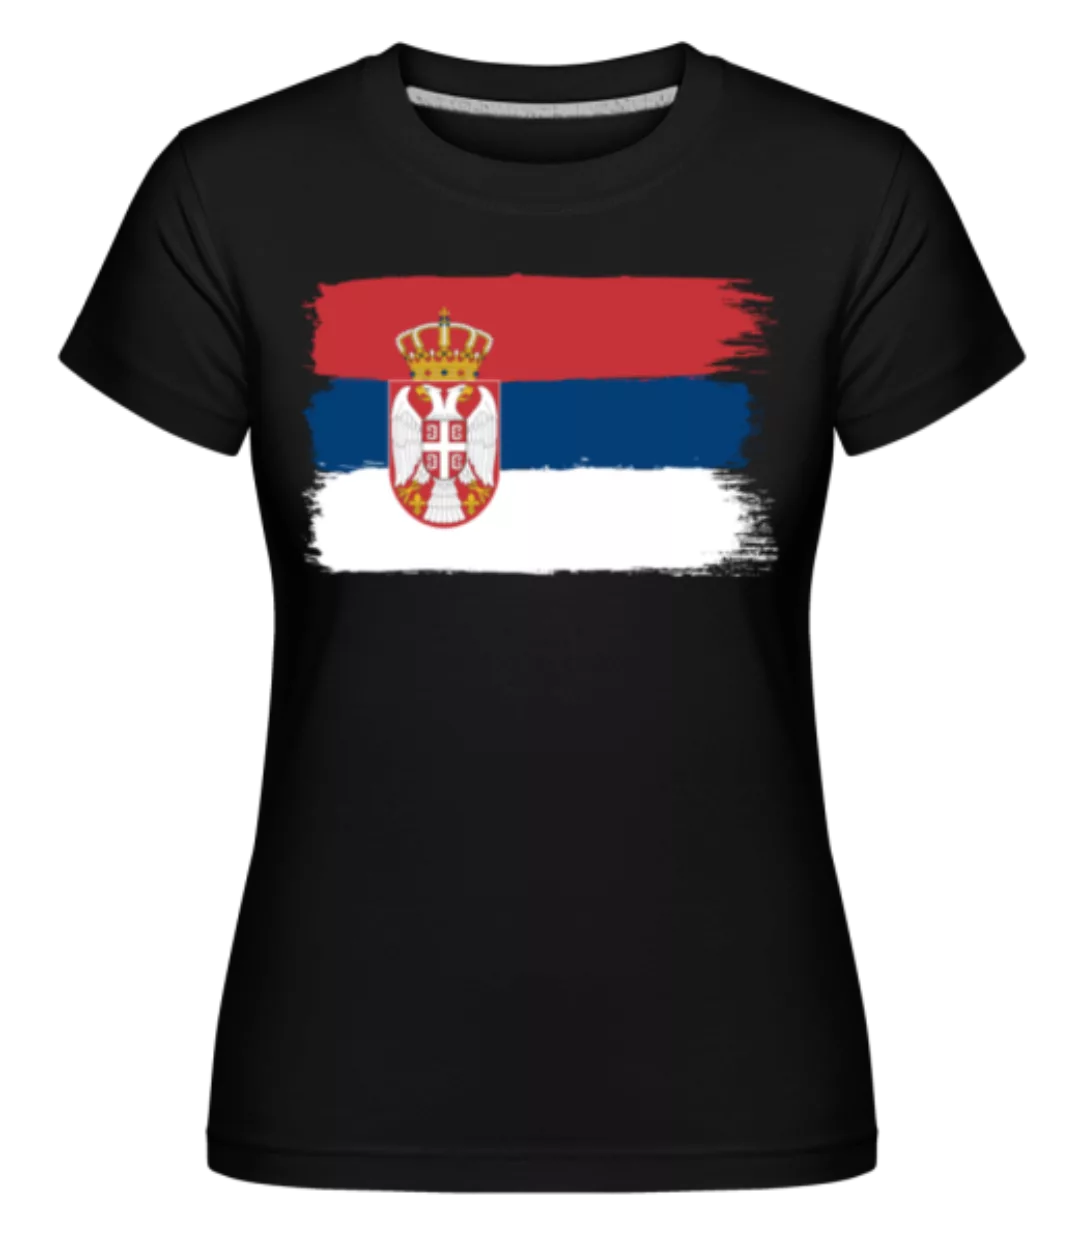 Länder Flagge Serbien · Shirtinator Frauen T-Shirt günstig online kaufen